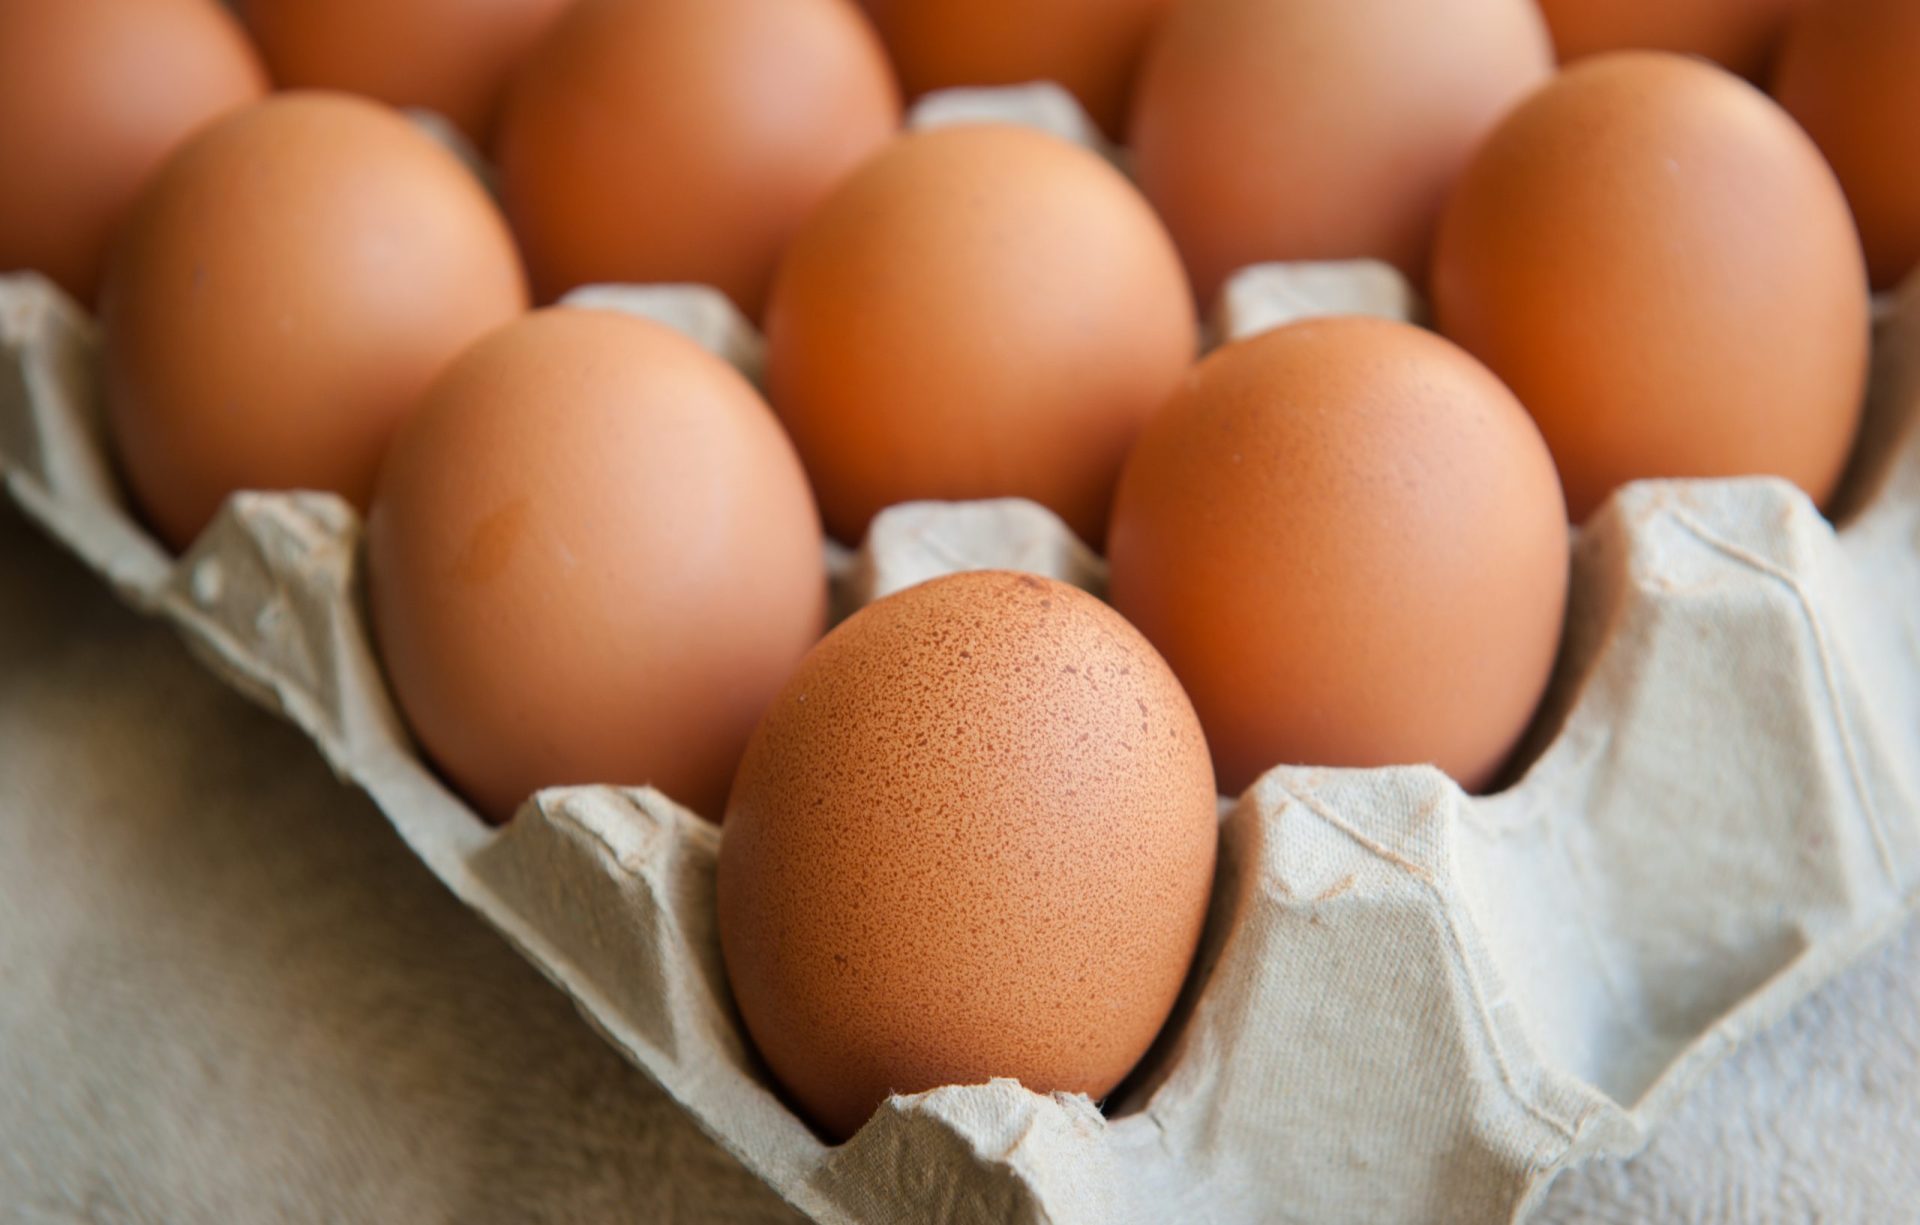 Afinal há ou não ovos contaminados em Portugal? Governo diz que não